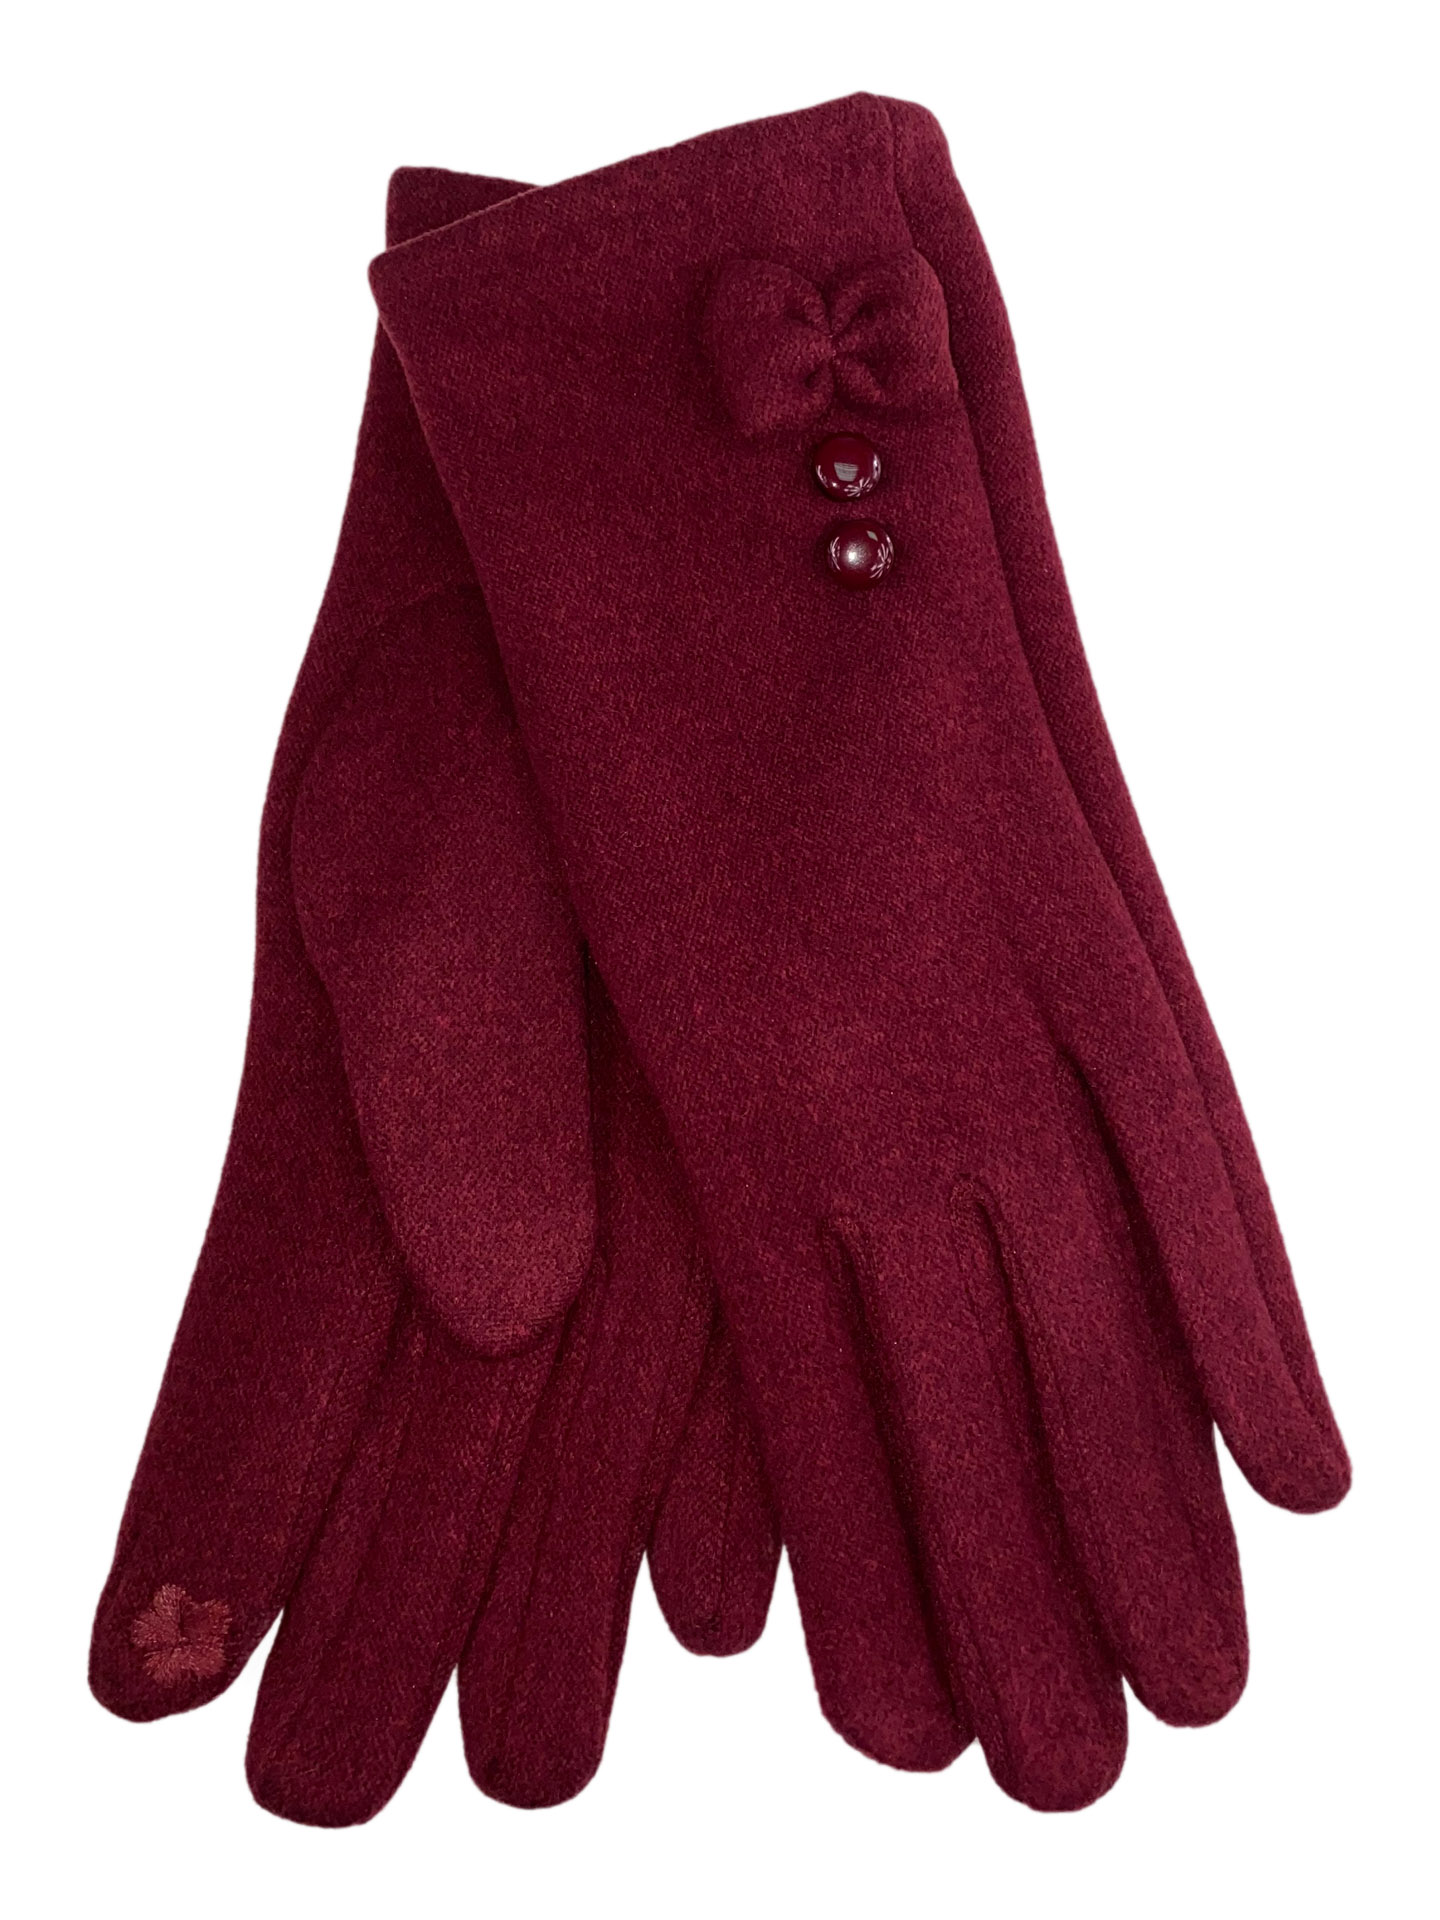 Утеплённые женские перчатки из велюра с декором, цвет бордовый